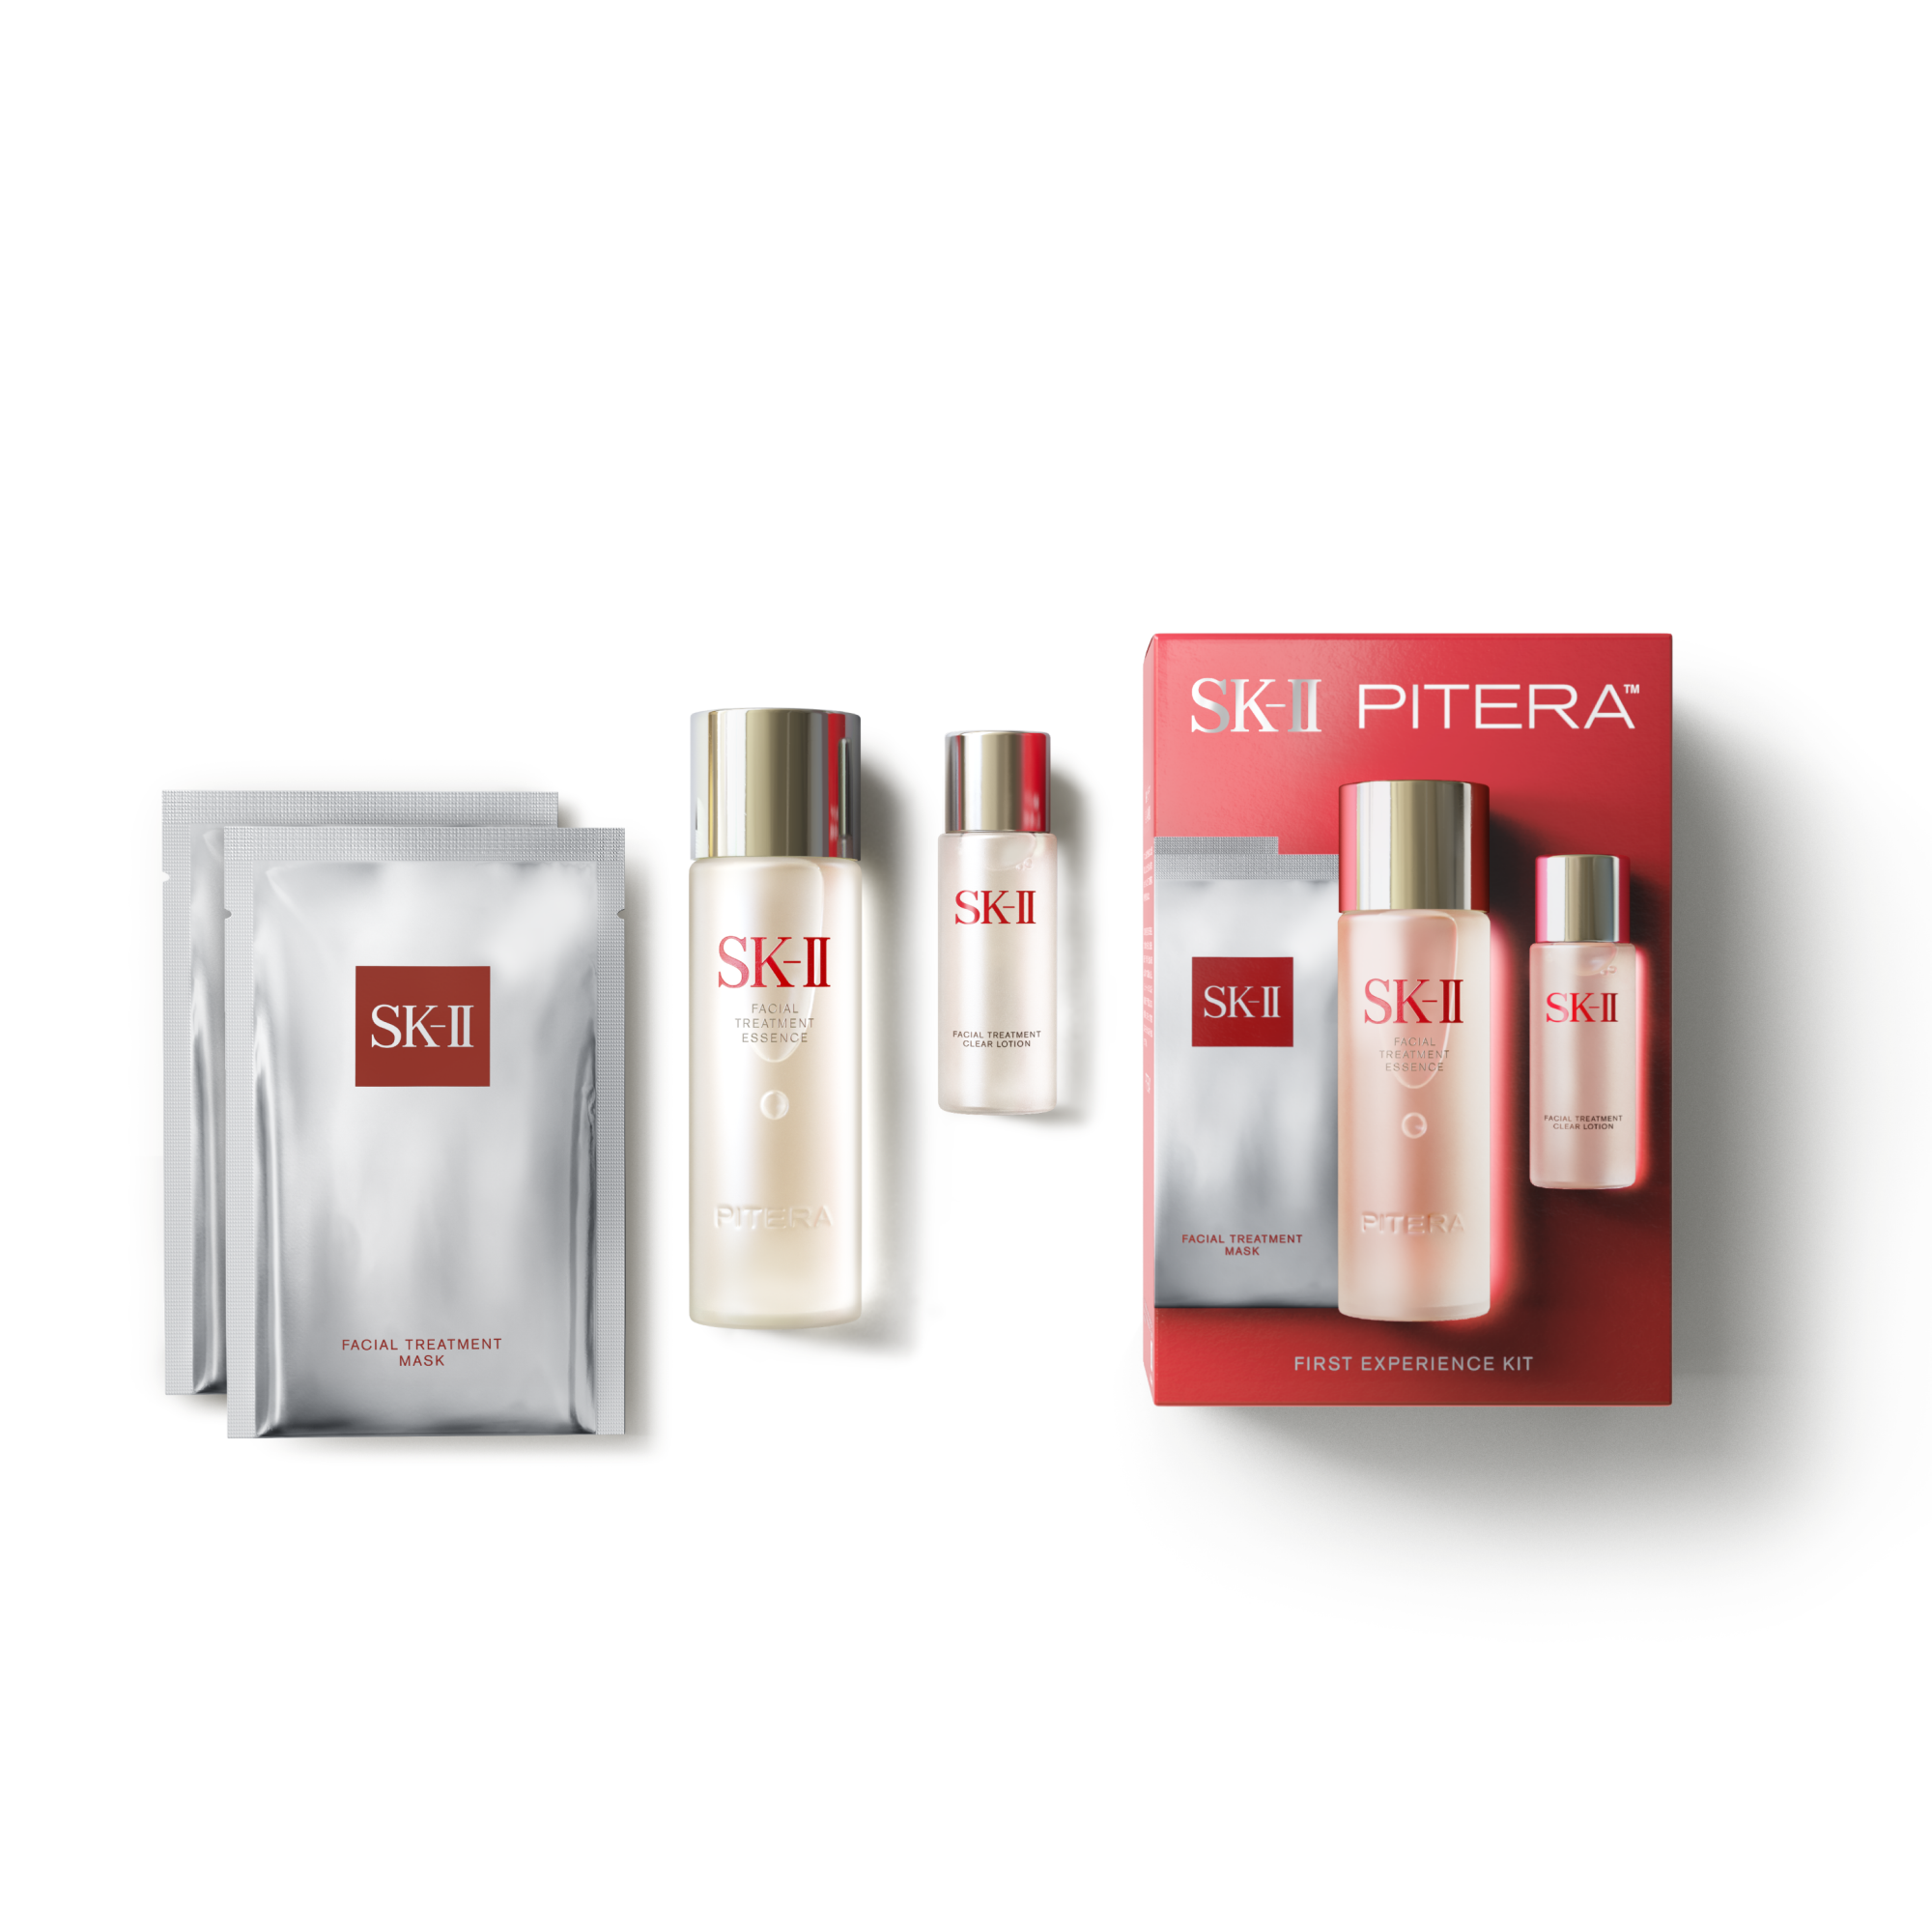 PITERA™ First Experience Kit | SK-II US - SK-II